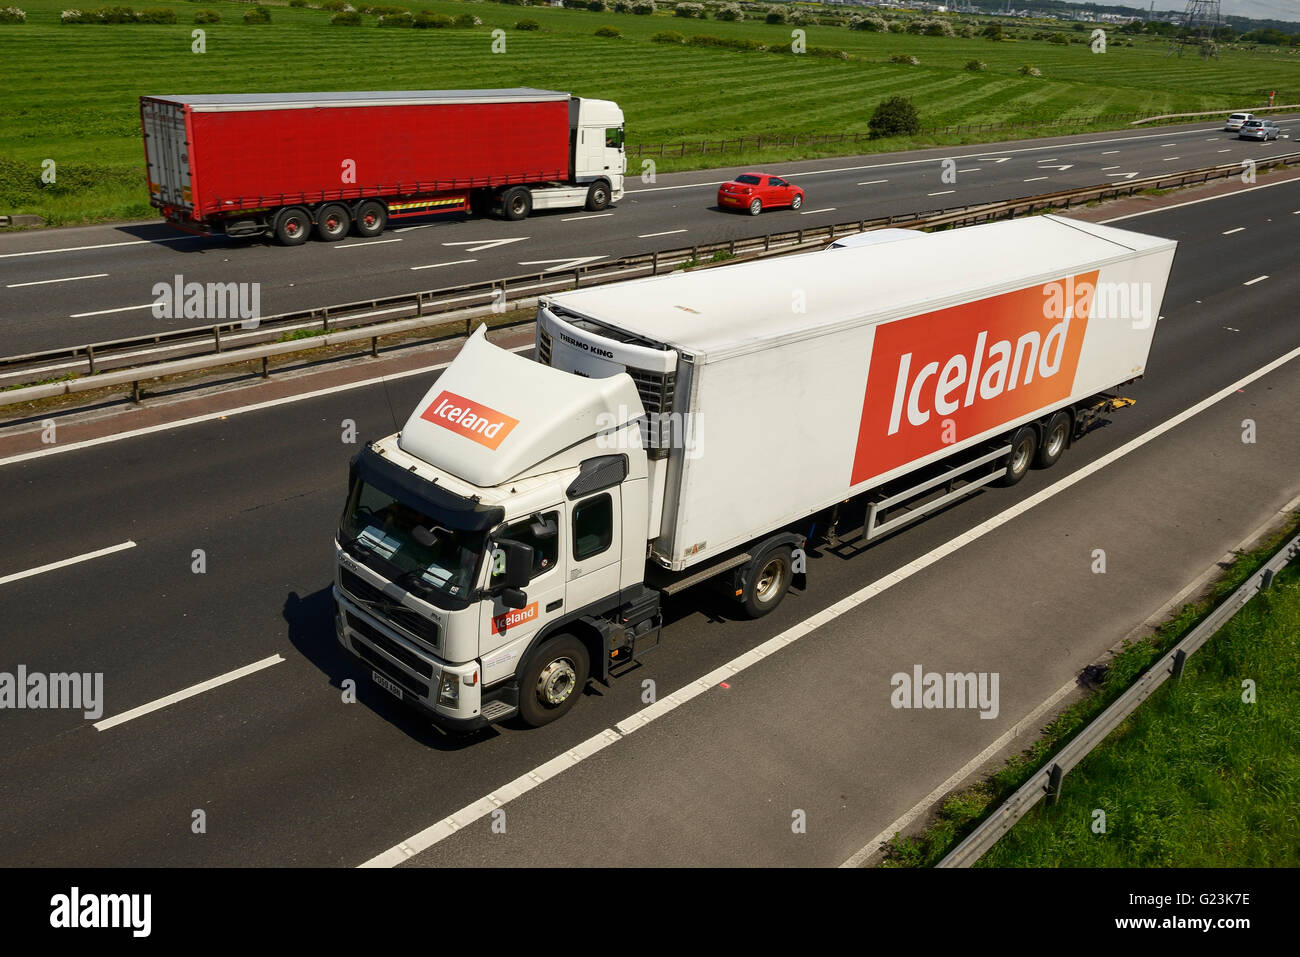 Islandia VHG viajando por la autopista M56 en Cheshire UK Foto de stock